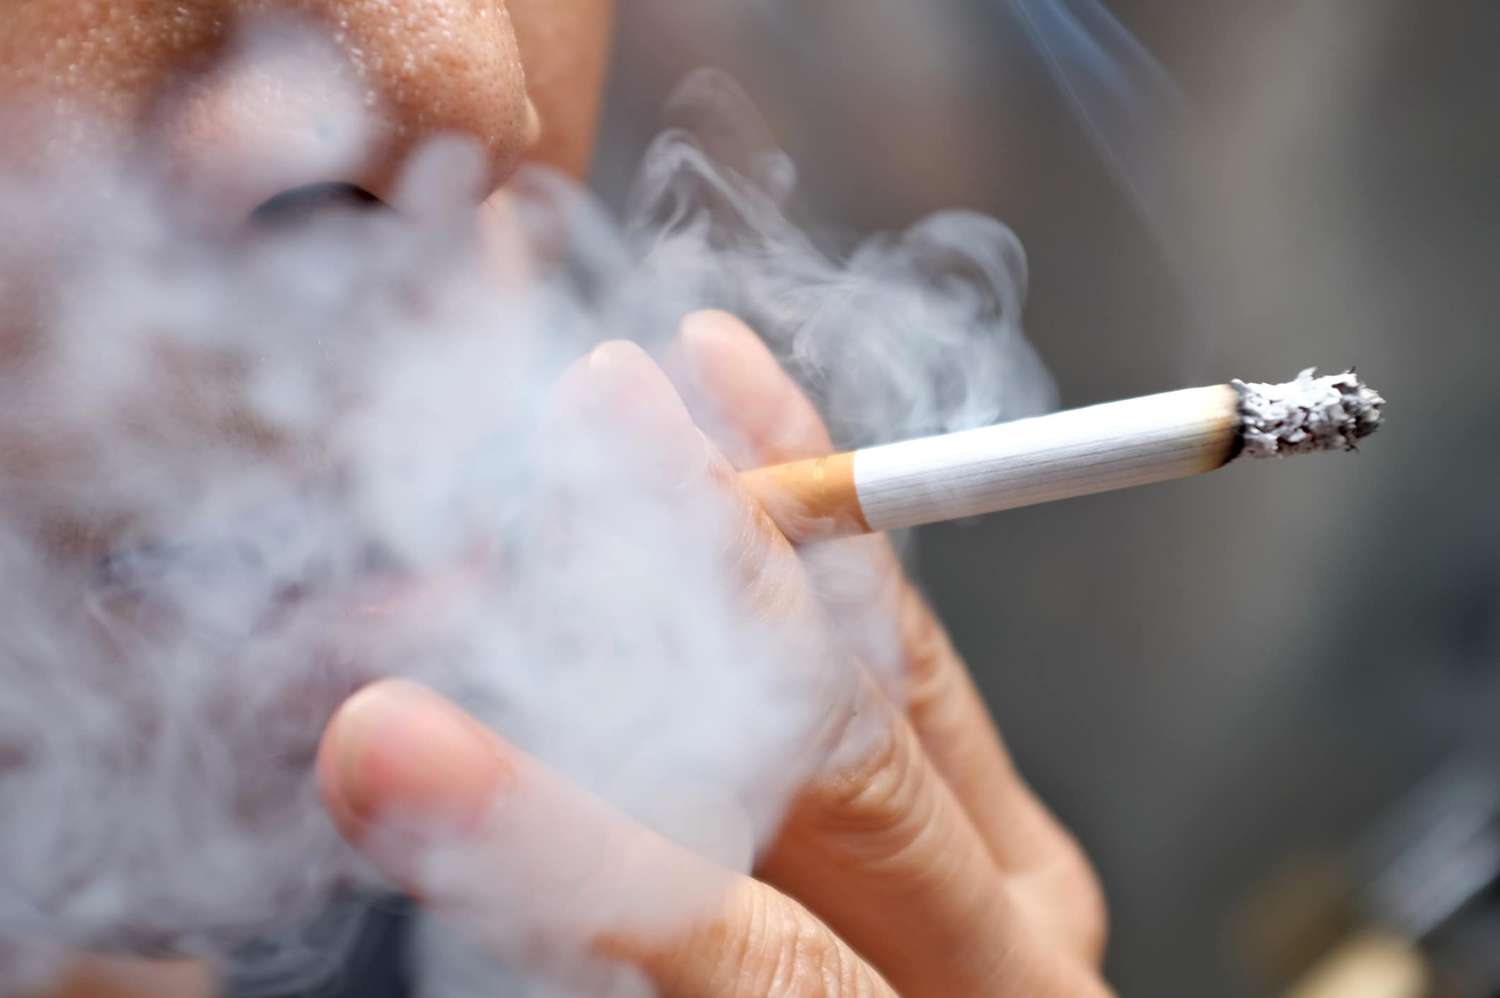 Organizaciones de todo el mundo enfatizan sobre los daños del tabaco al ambiente